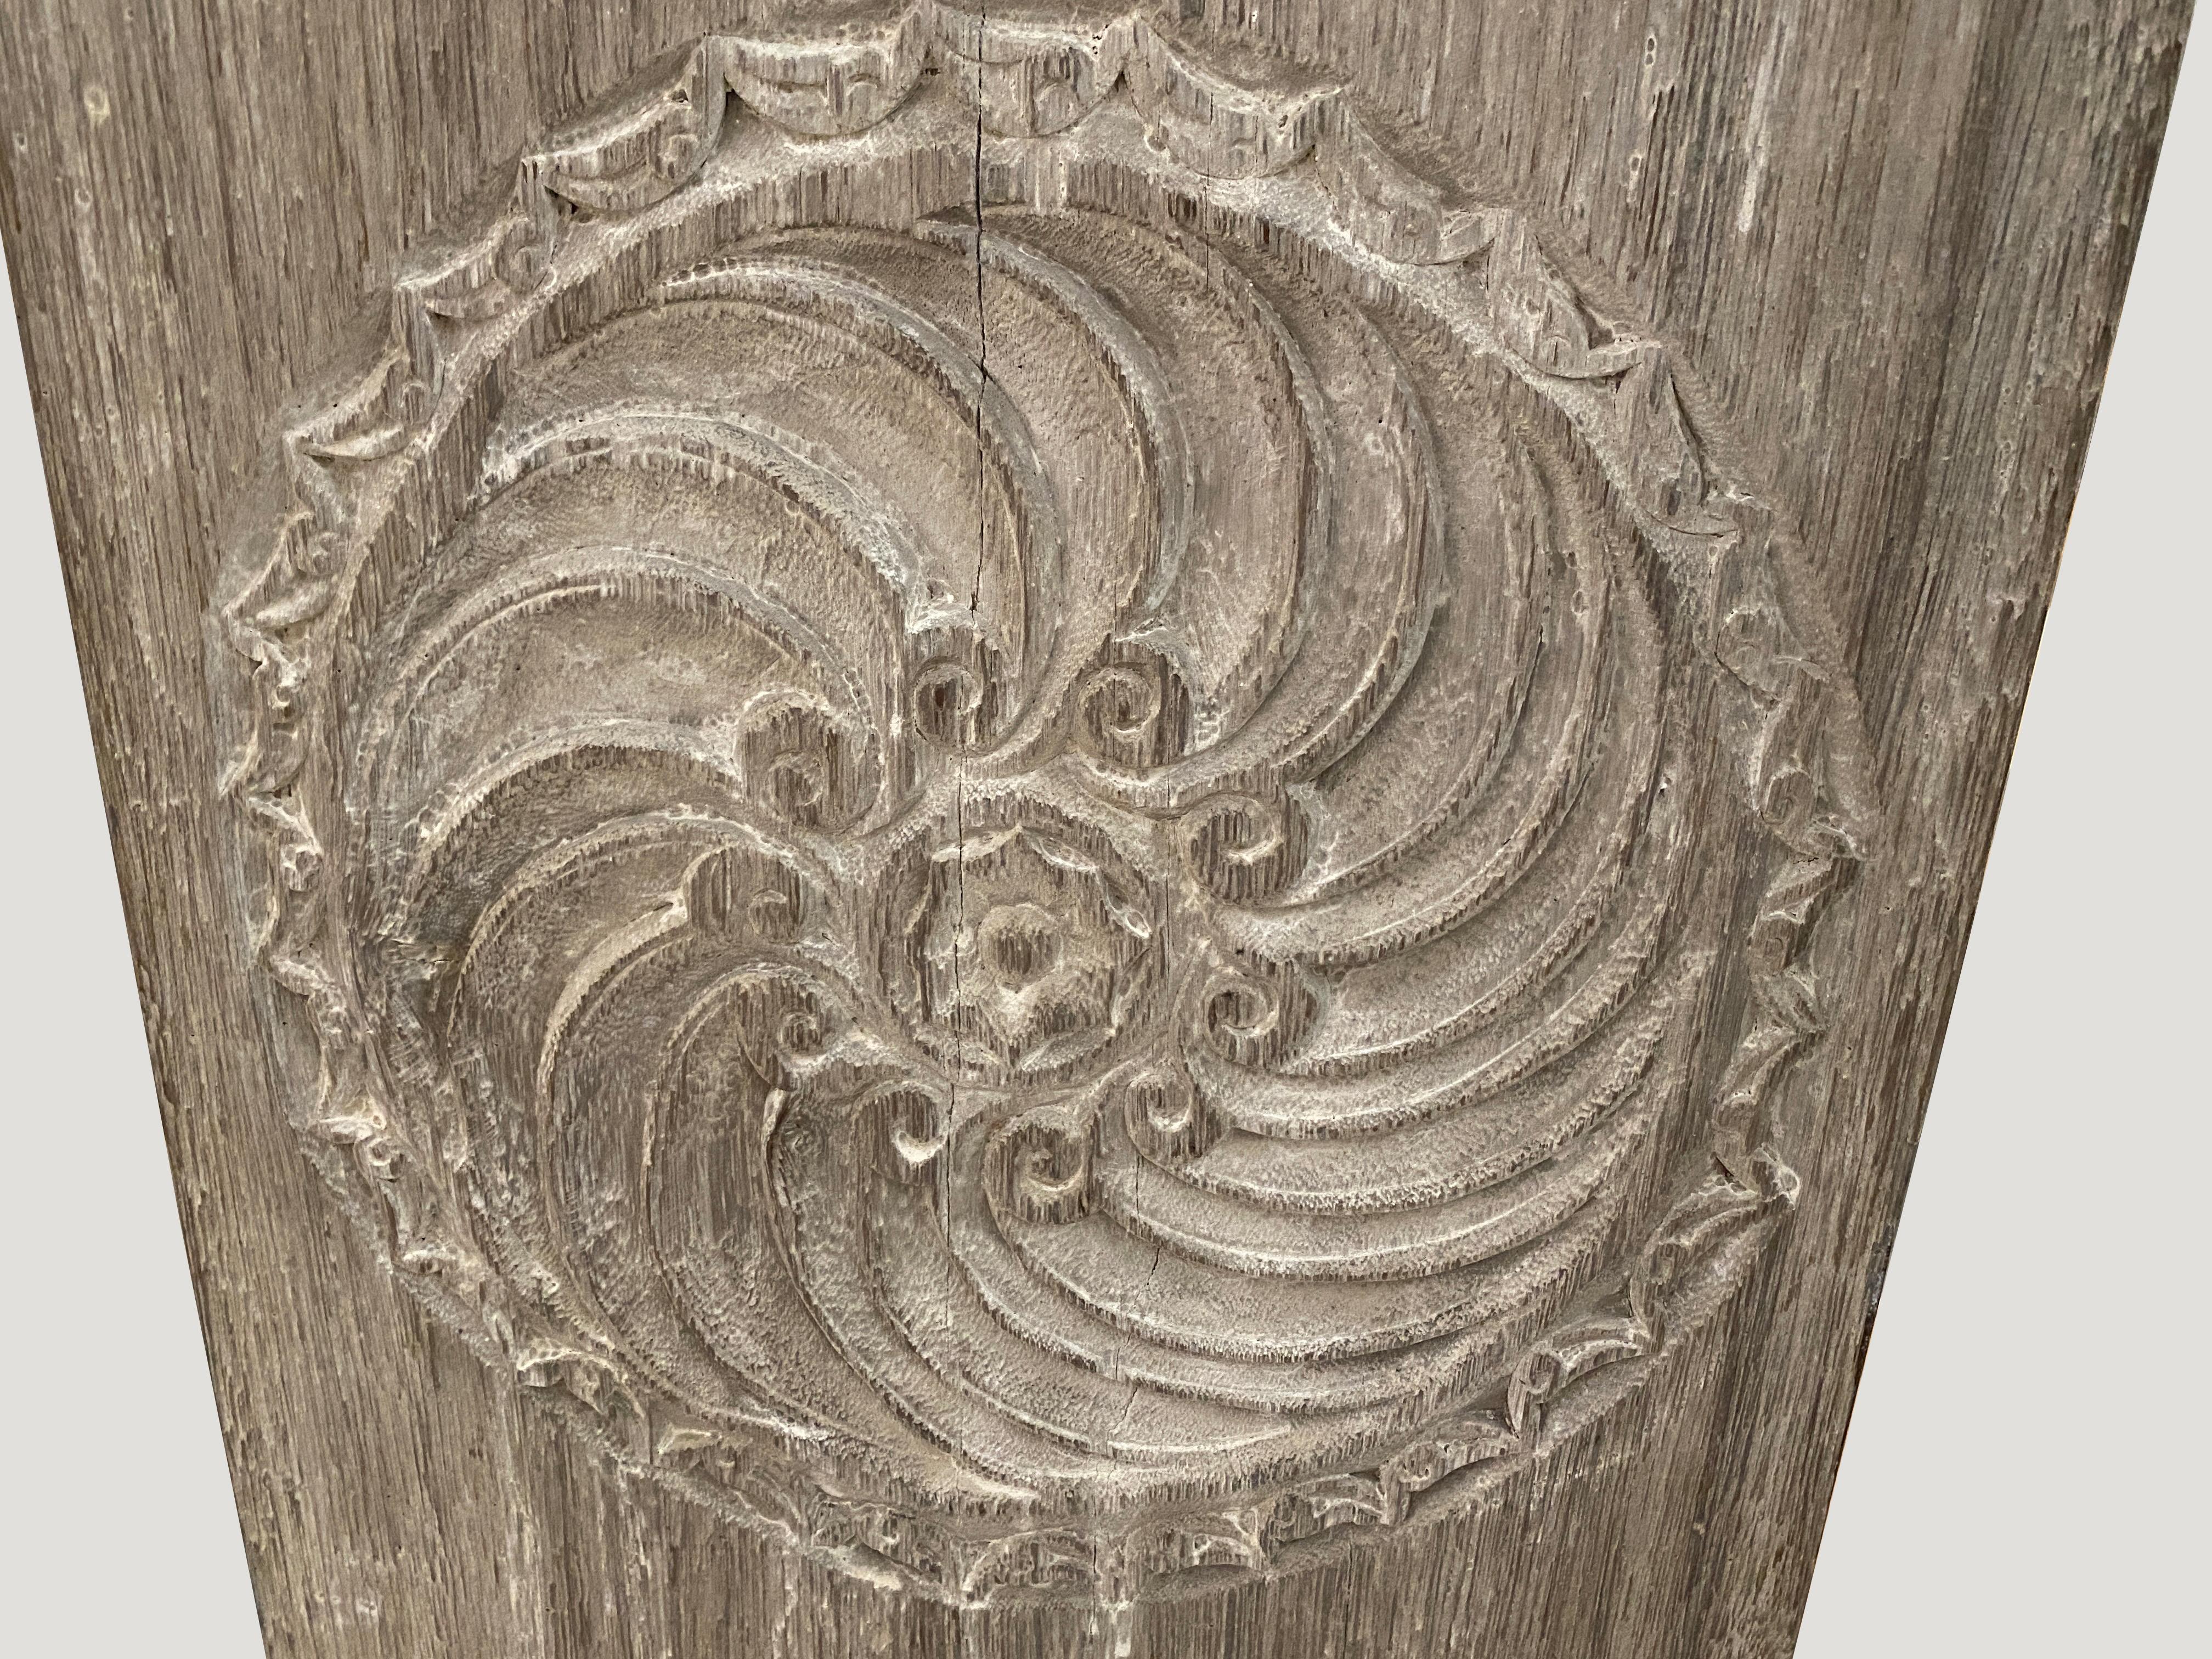 Panneau ancien en bois merbau sculpté à la main, provenant de Lampung, Sumatra. Nous avons une collection en différentes tailles. Veuillez vous renseigner. La taille et le prix correspondent à celui qui est présenté. Superbe des deux côtés.

Ce